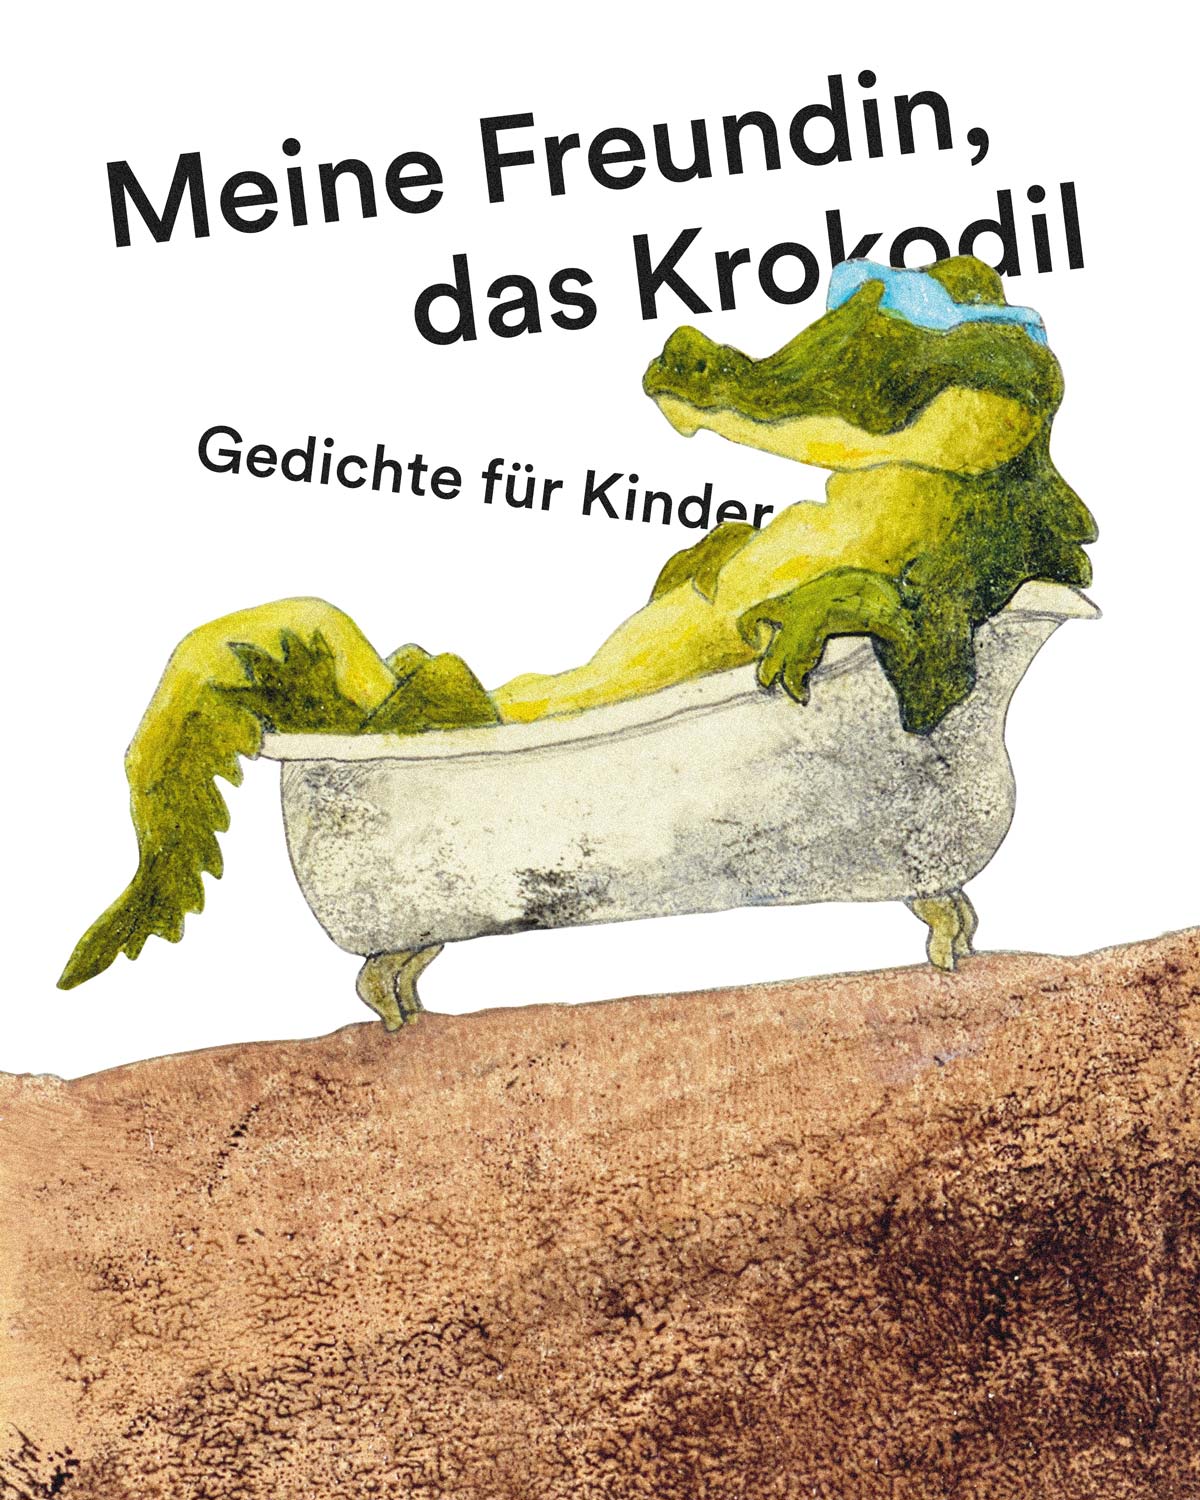 Meine Freundin Das Krokodil Gedichte Fur Kinder Chinderbuechlade Furs Leben Gern Lesen